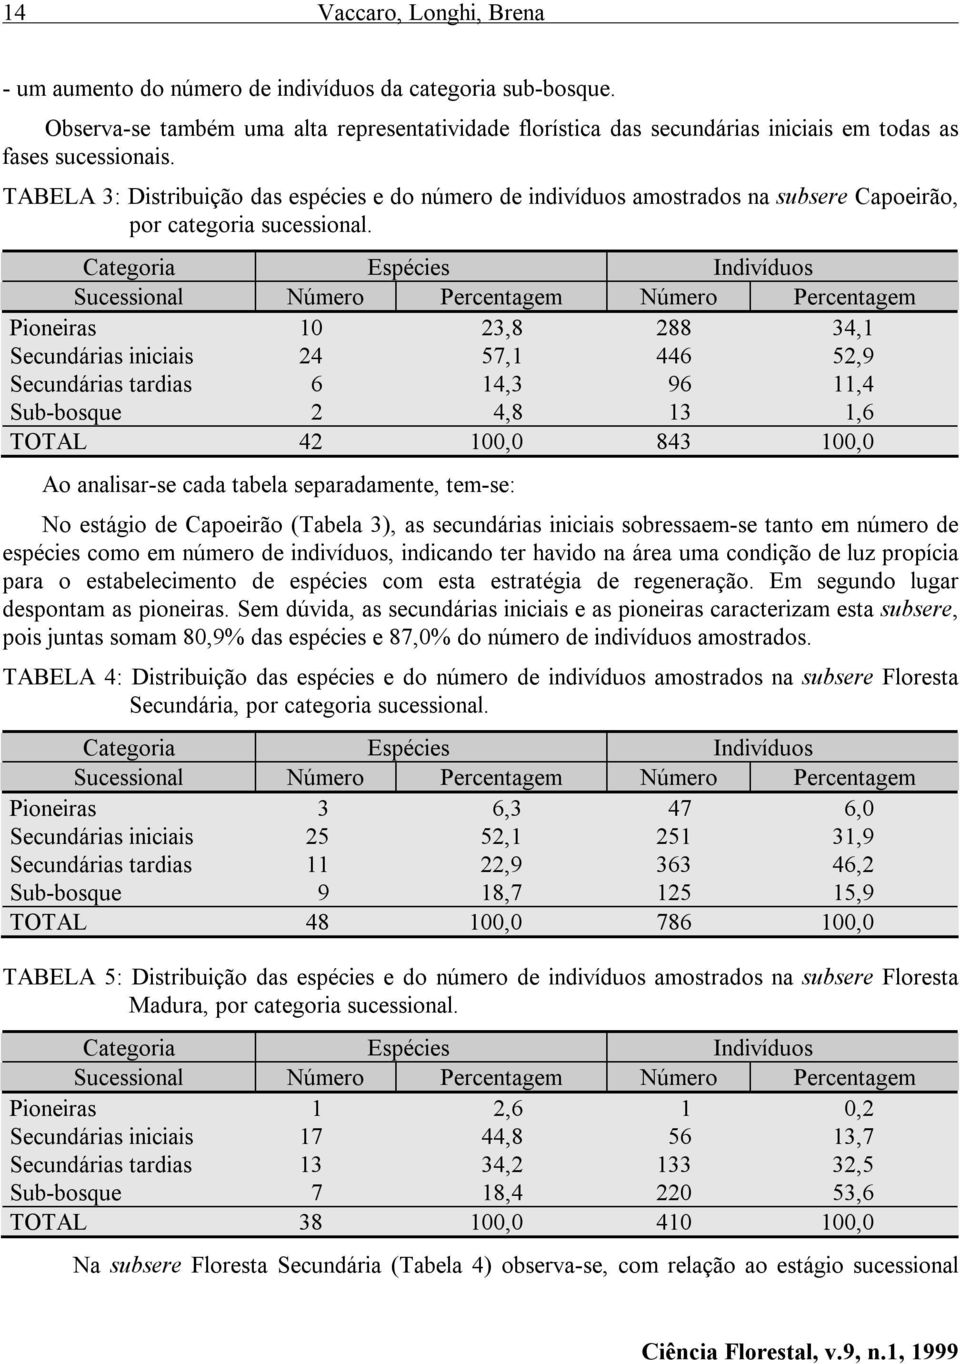 TABELA 3: Distribuição das espécies e do número de indivíduos amostrados na subsere Capoeirão, por categoria sucessional.